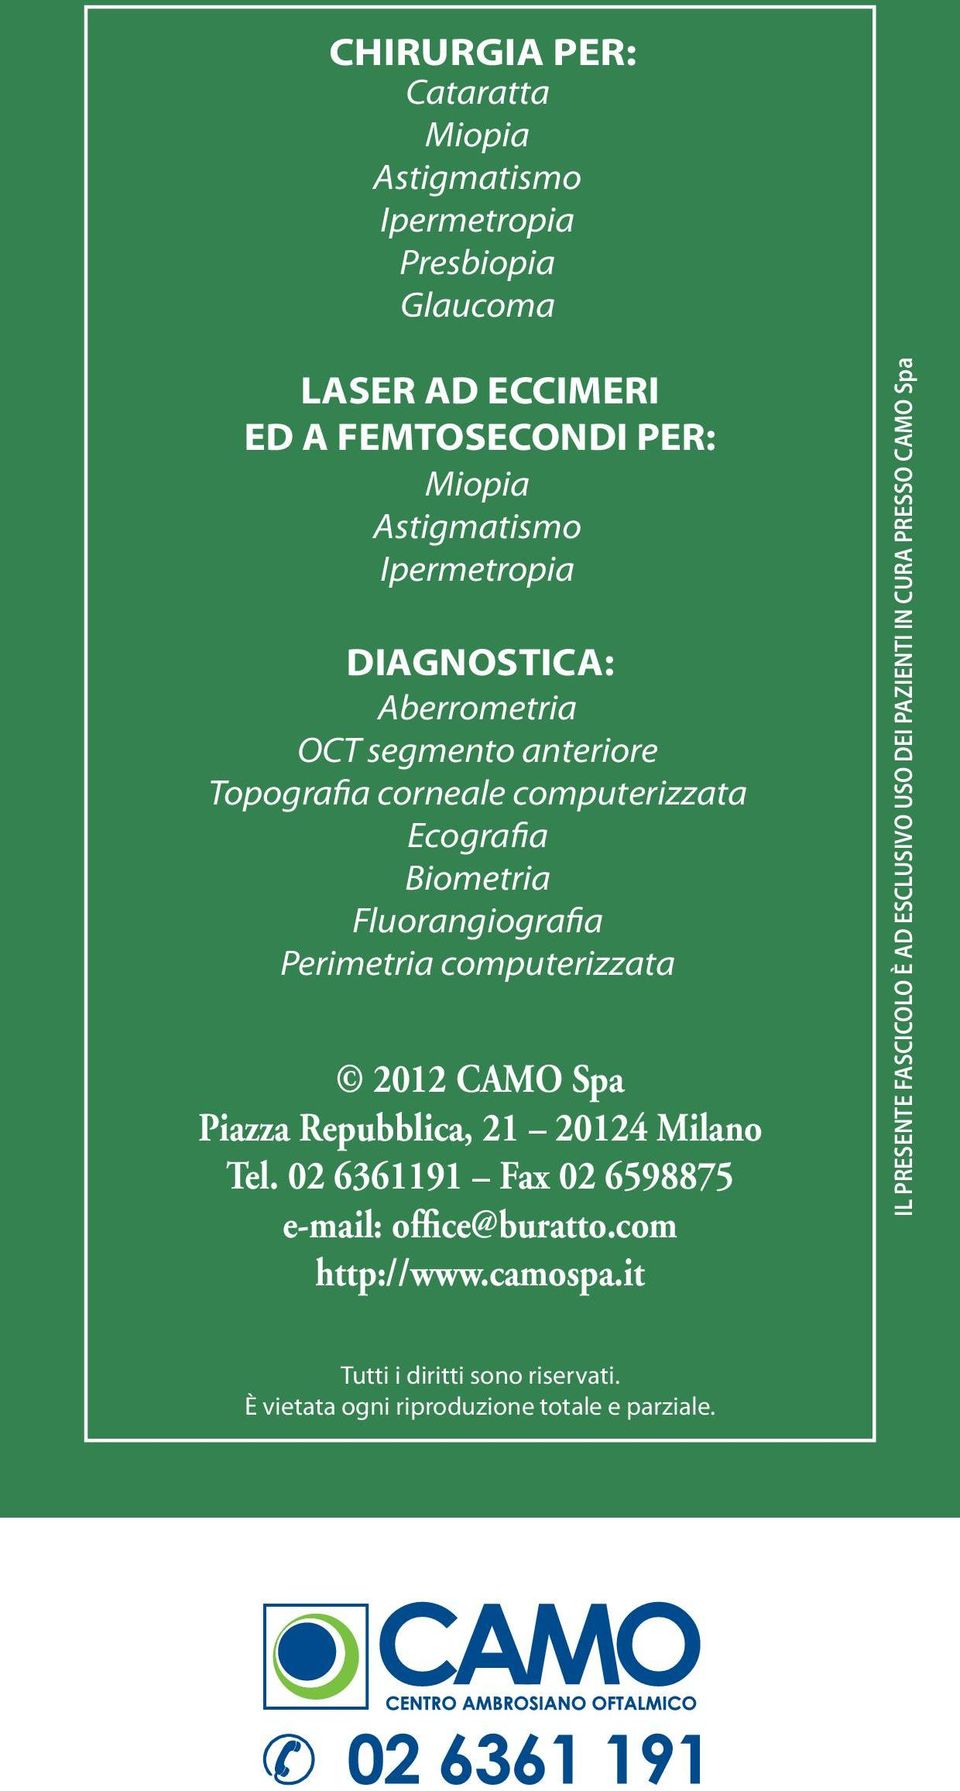 computerizzata 2012 CAMO Spa Piazza Repubblica, 21 20124 Milano Tel. 02 6361191 Fax 02 6598875 e-mail: office@buratto.com http://www.camospa.